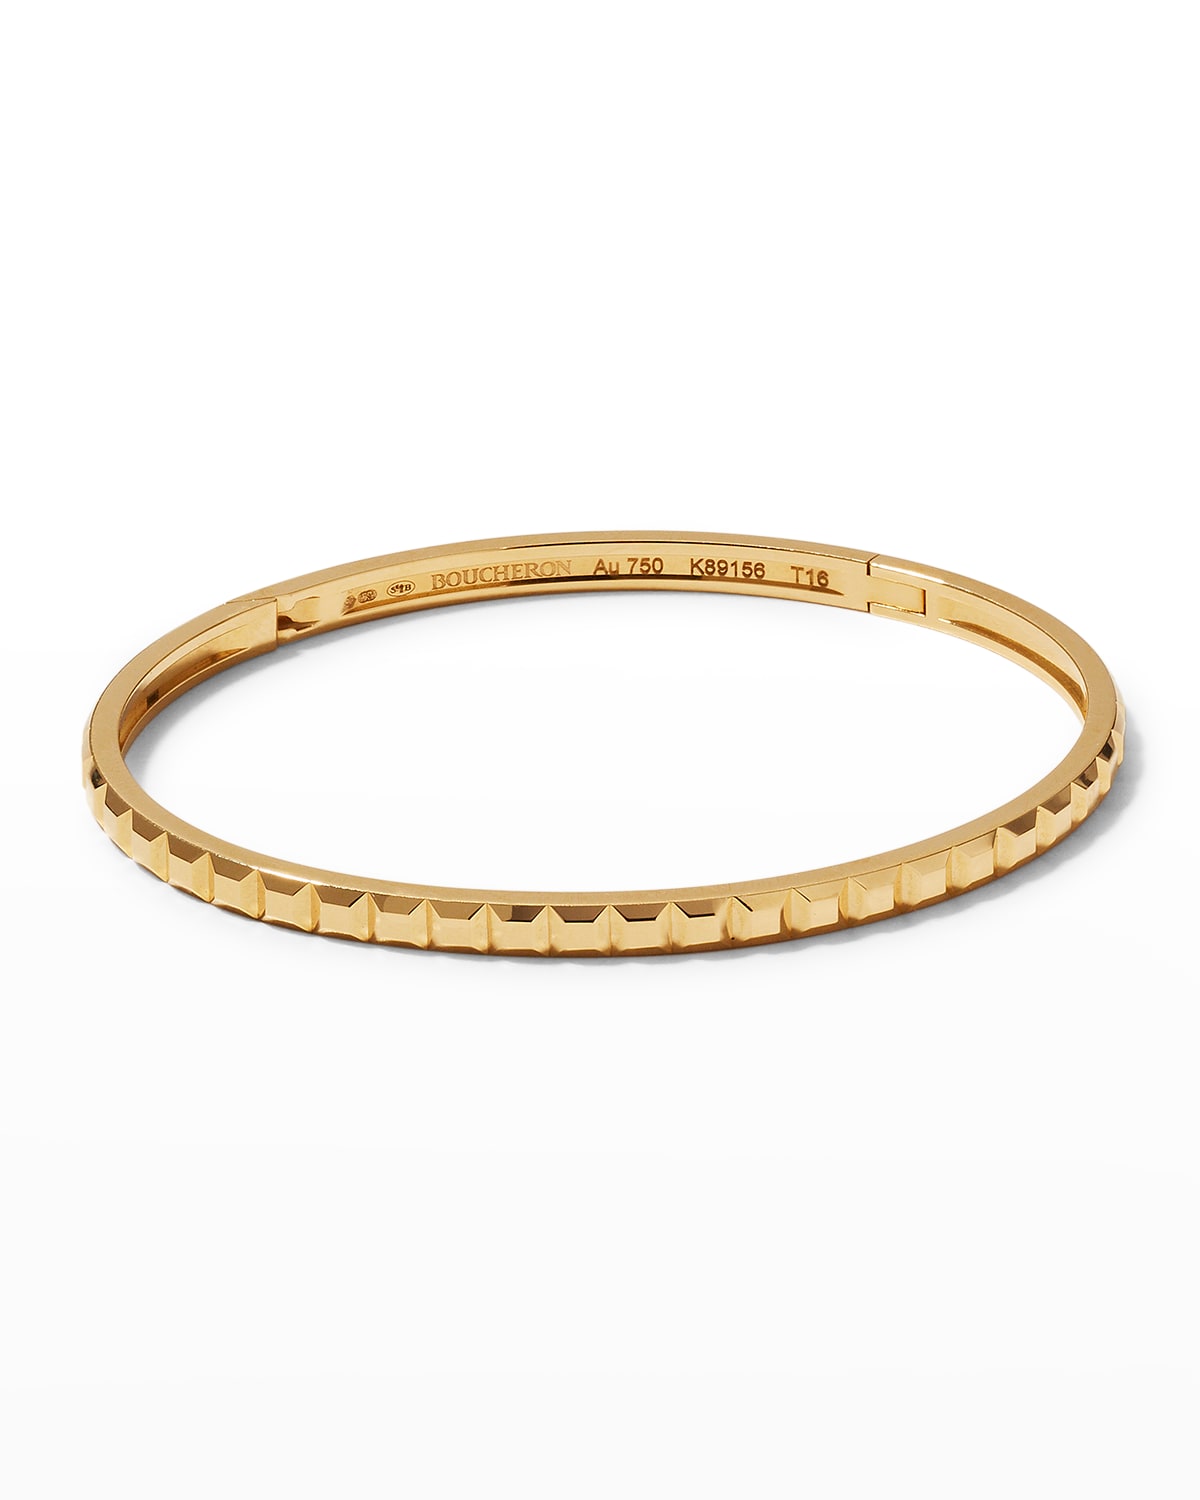 Quatre Clou de Paris Gold Bracelet, Size 16cm